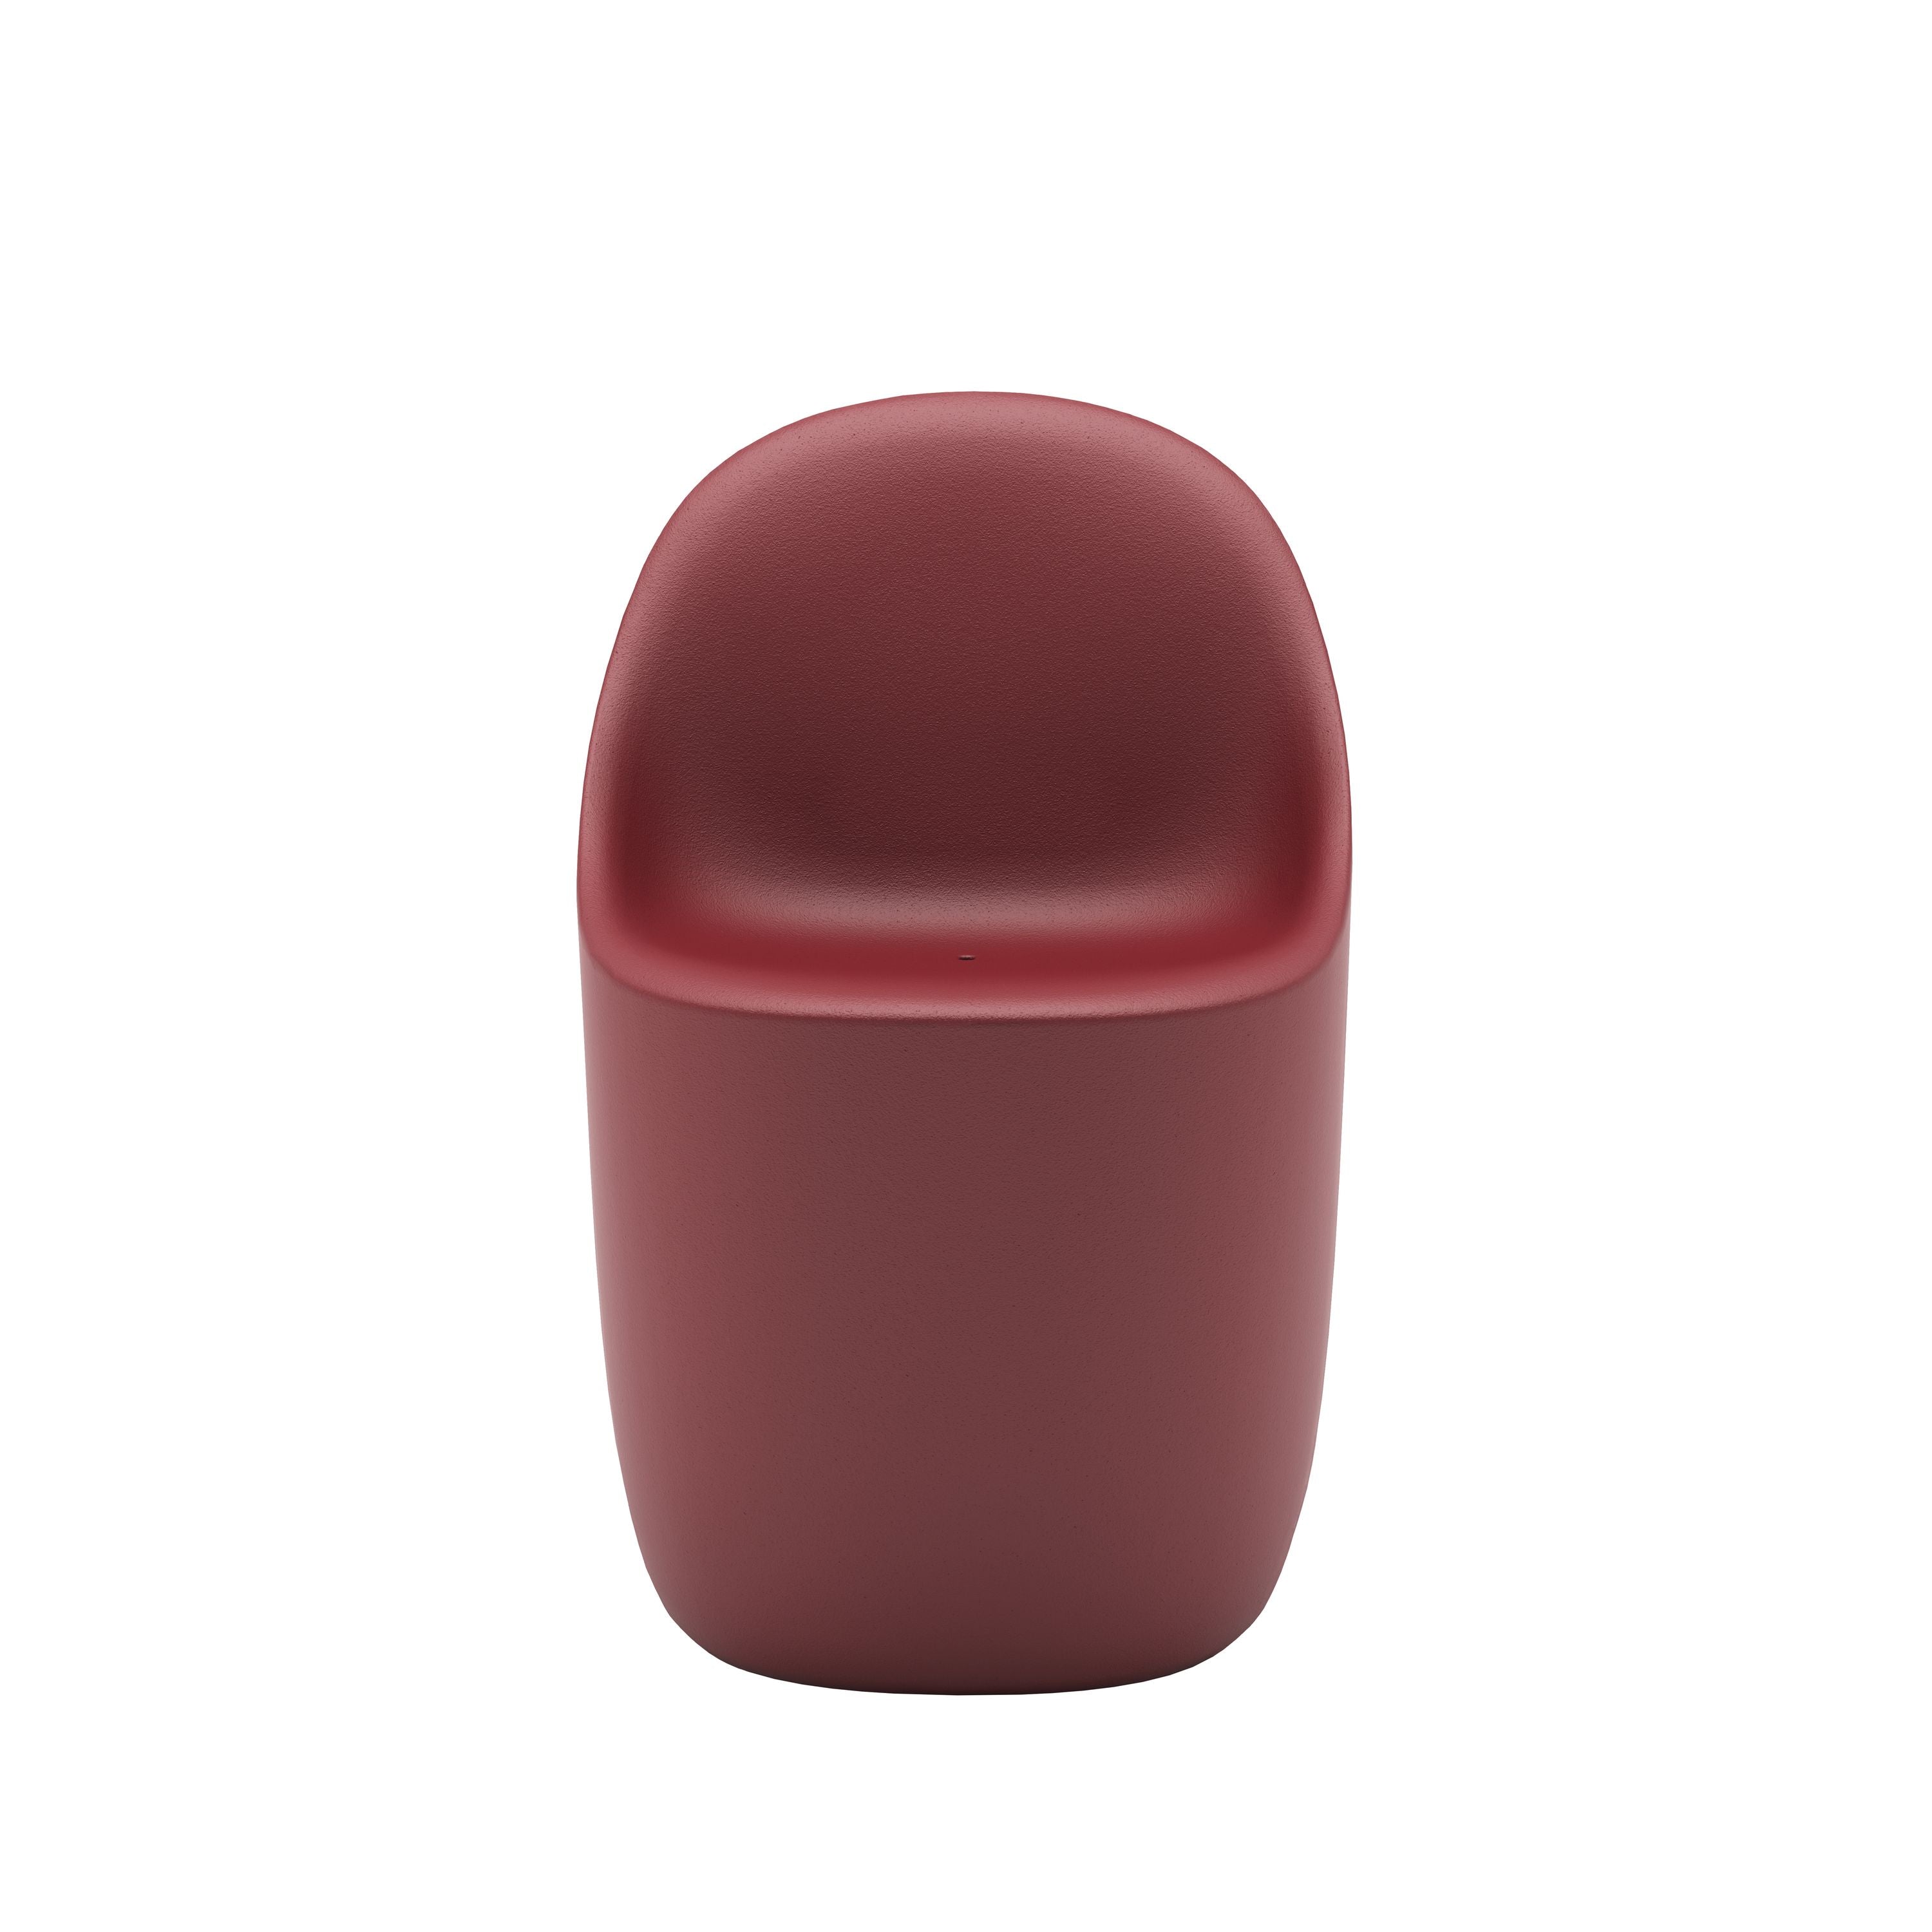 Qeeboo kullersten stol, indisk röd